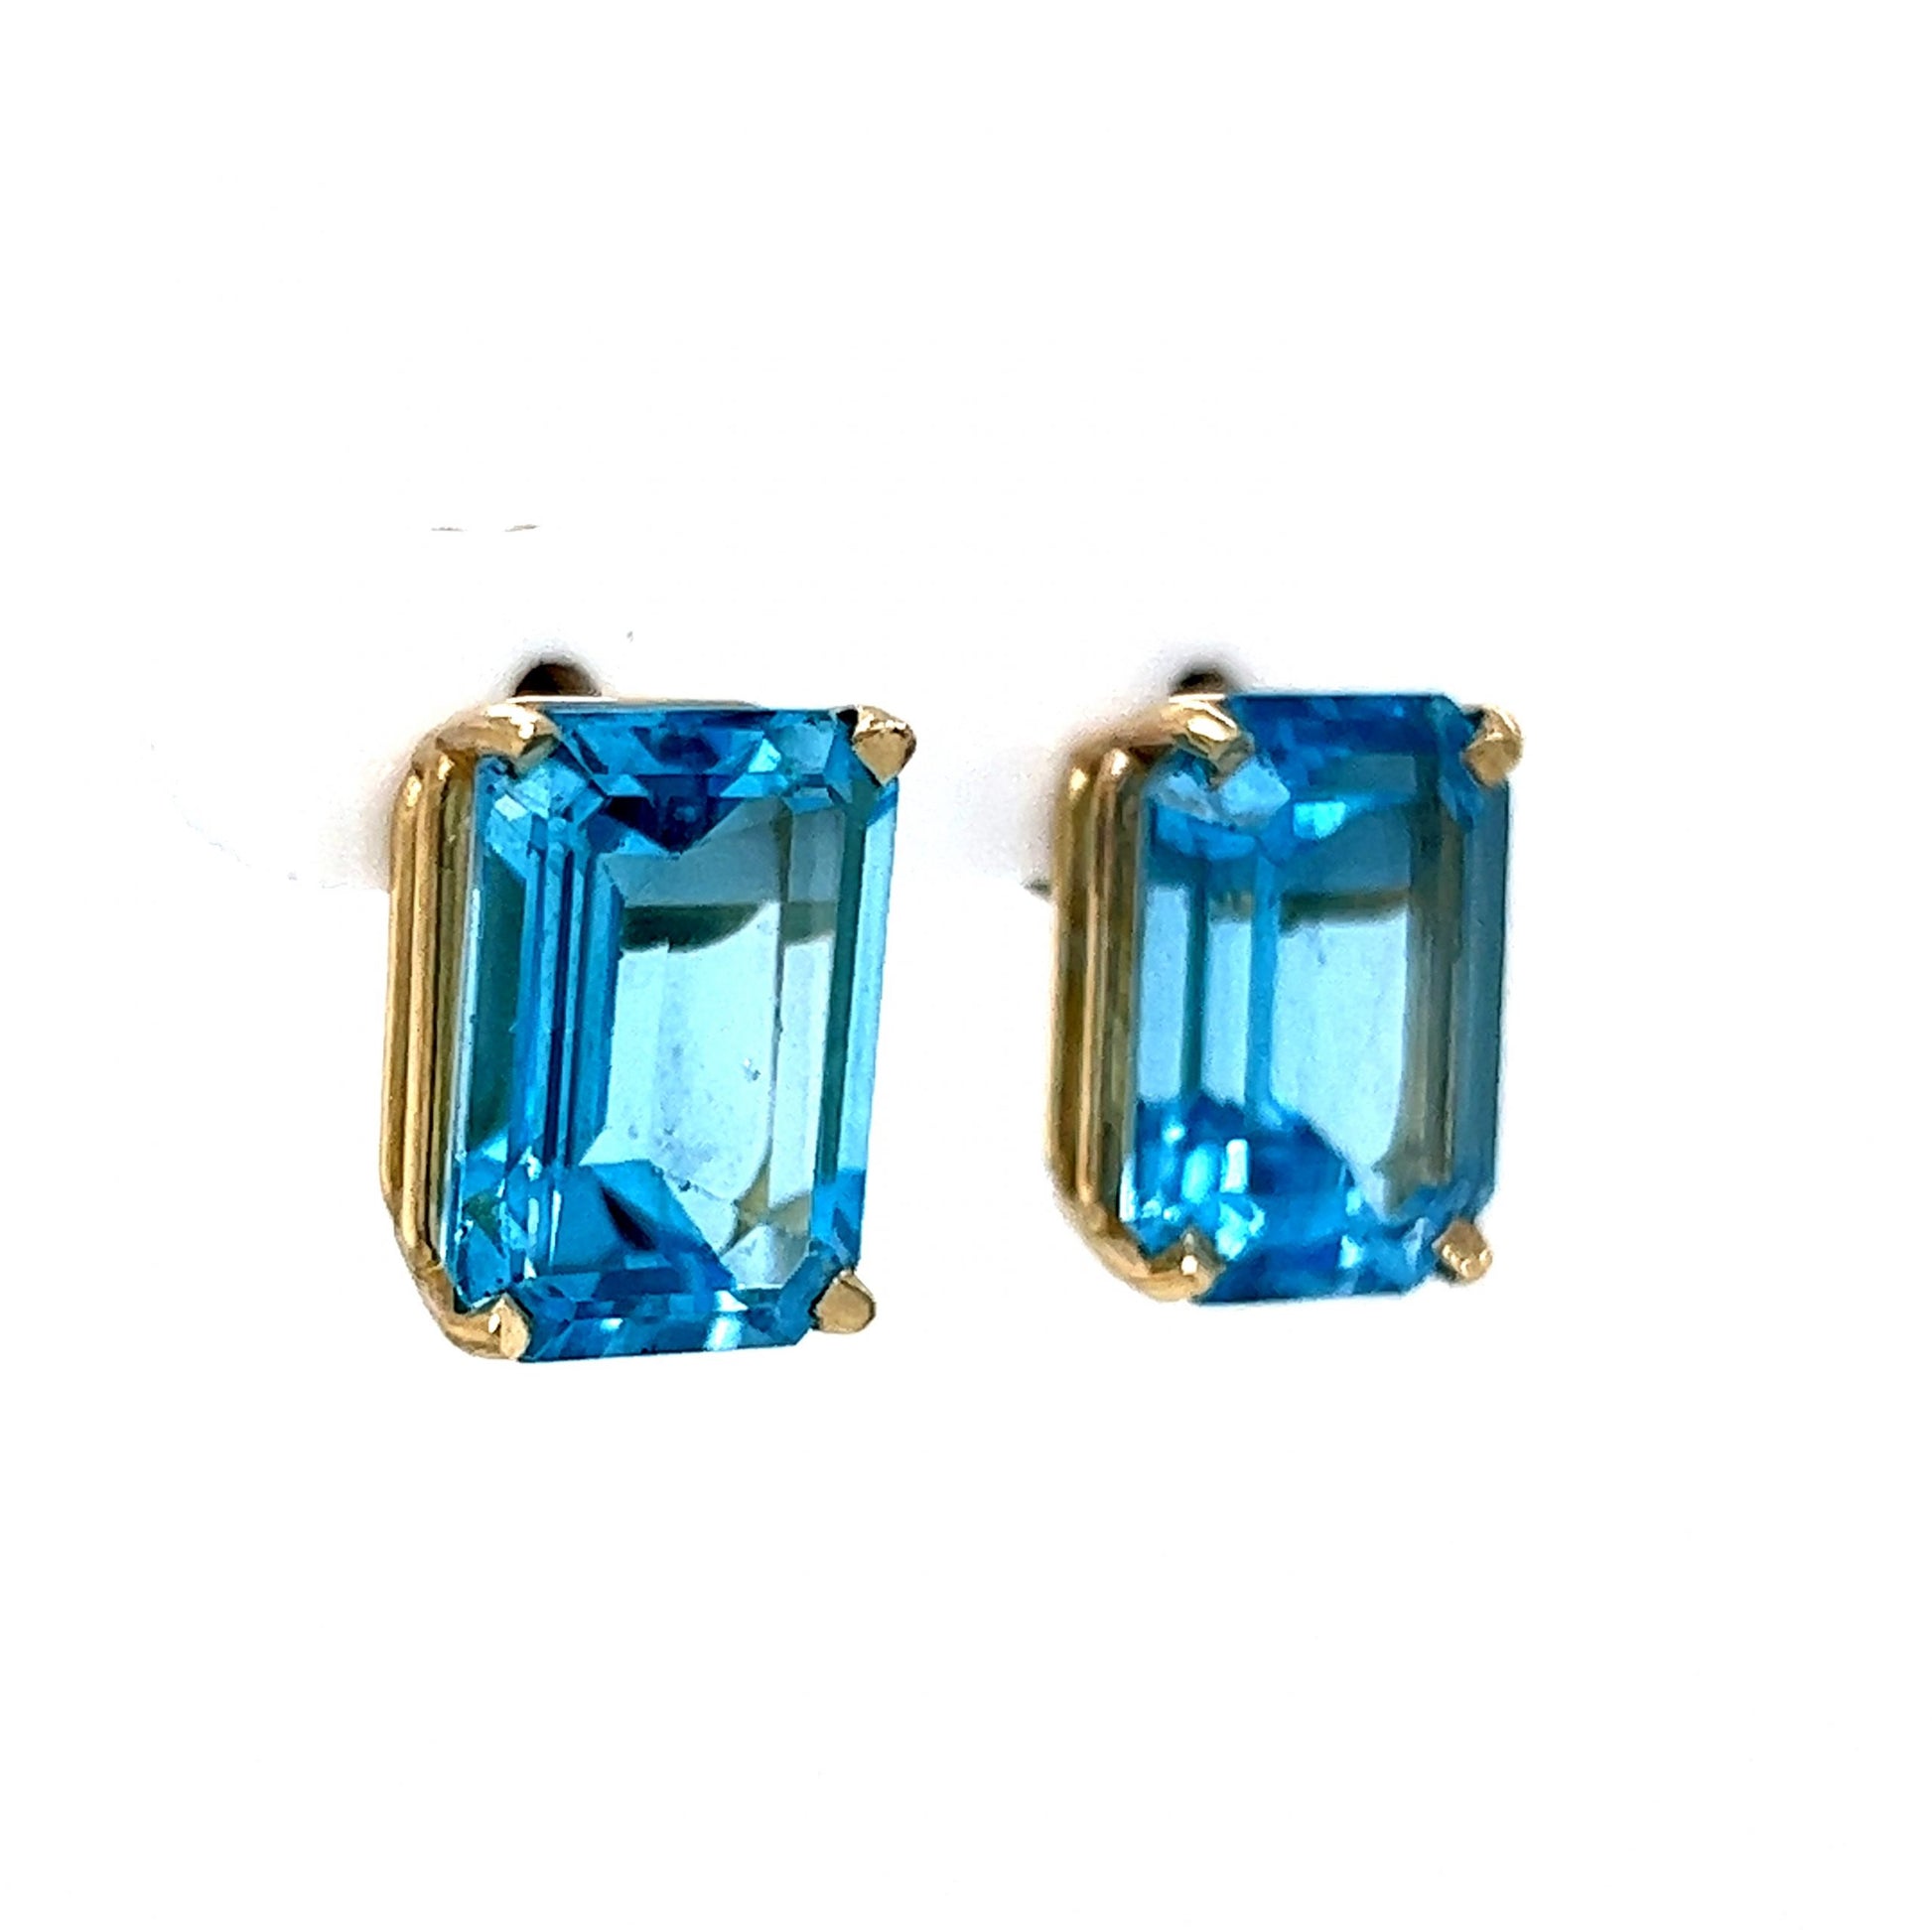 Large Emerald Cut Blue Topaz Earrings in 14k Yellow Gold